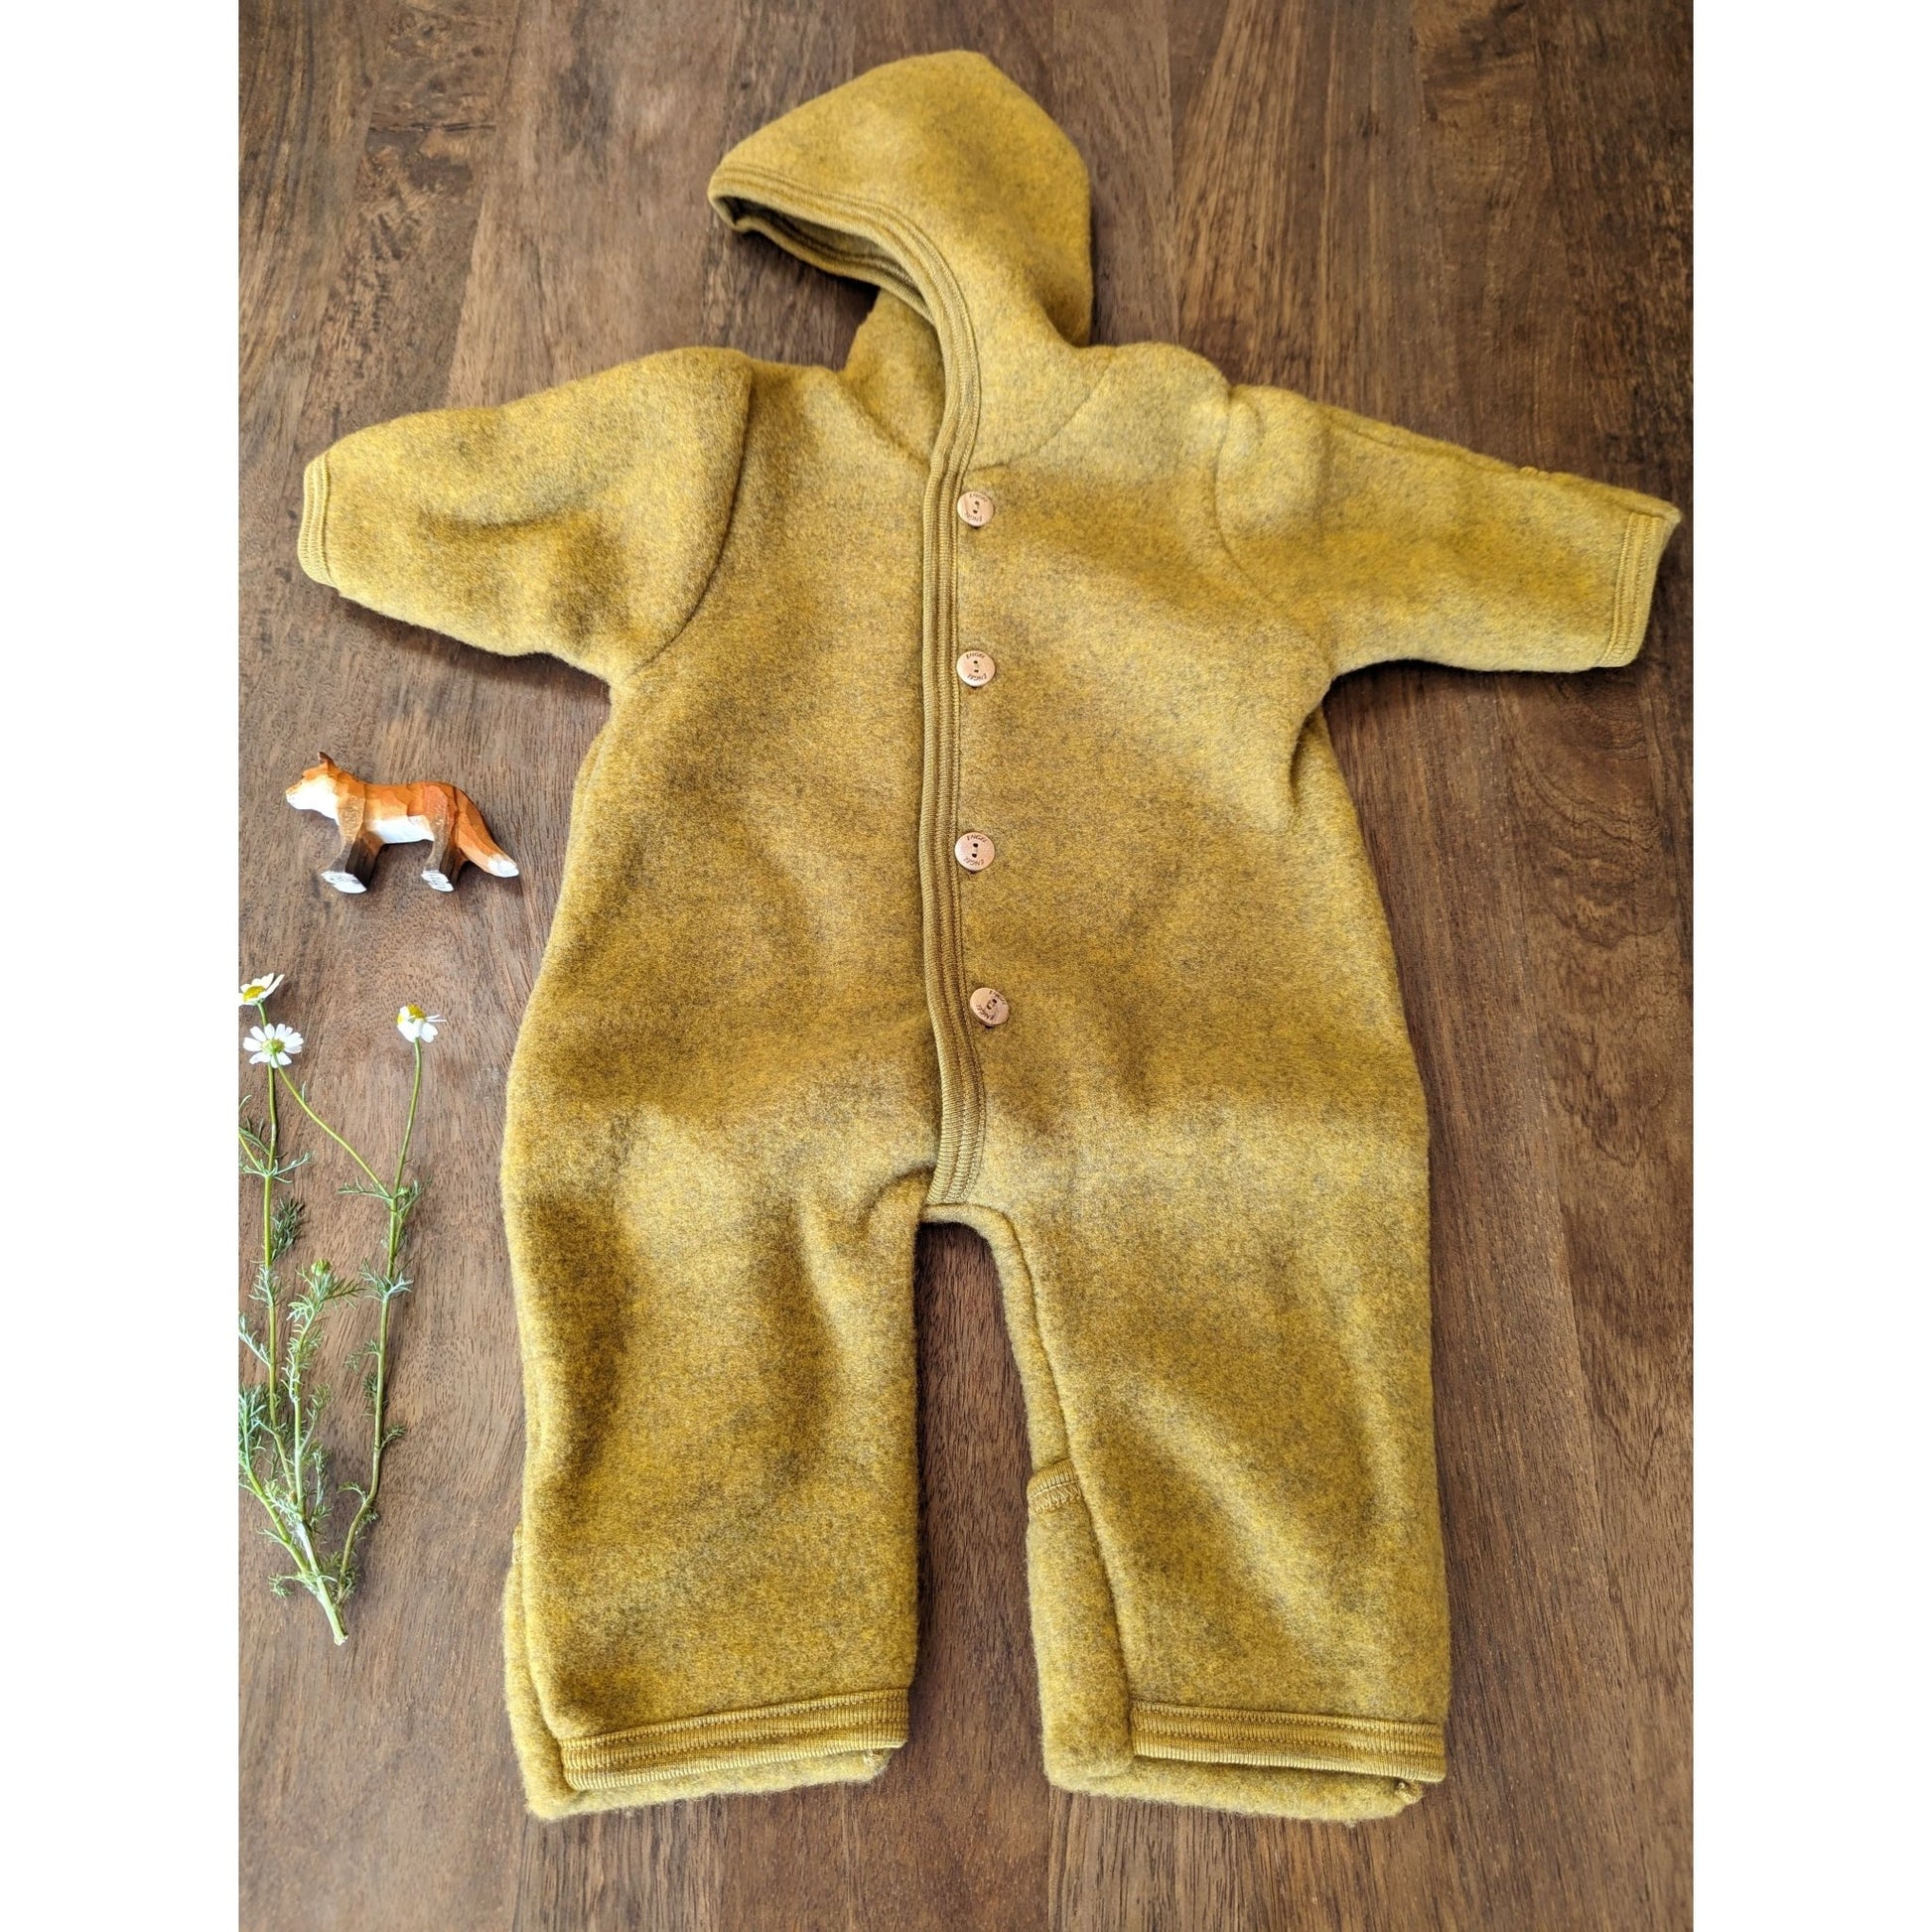 Engel Organic Merino Wool Fleece Baby Bonnet Walnut - Engel Wool Canada -  Ava's Appletree